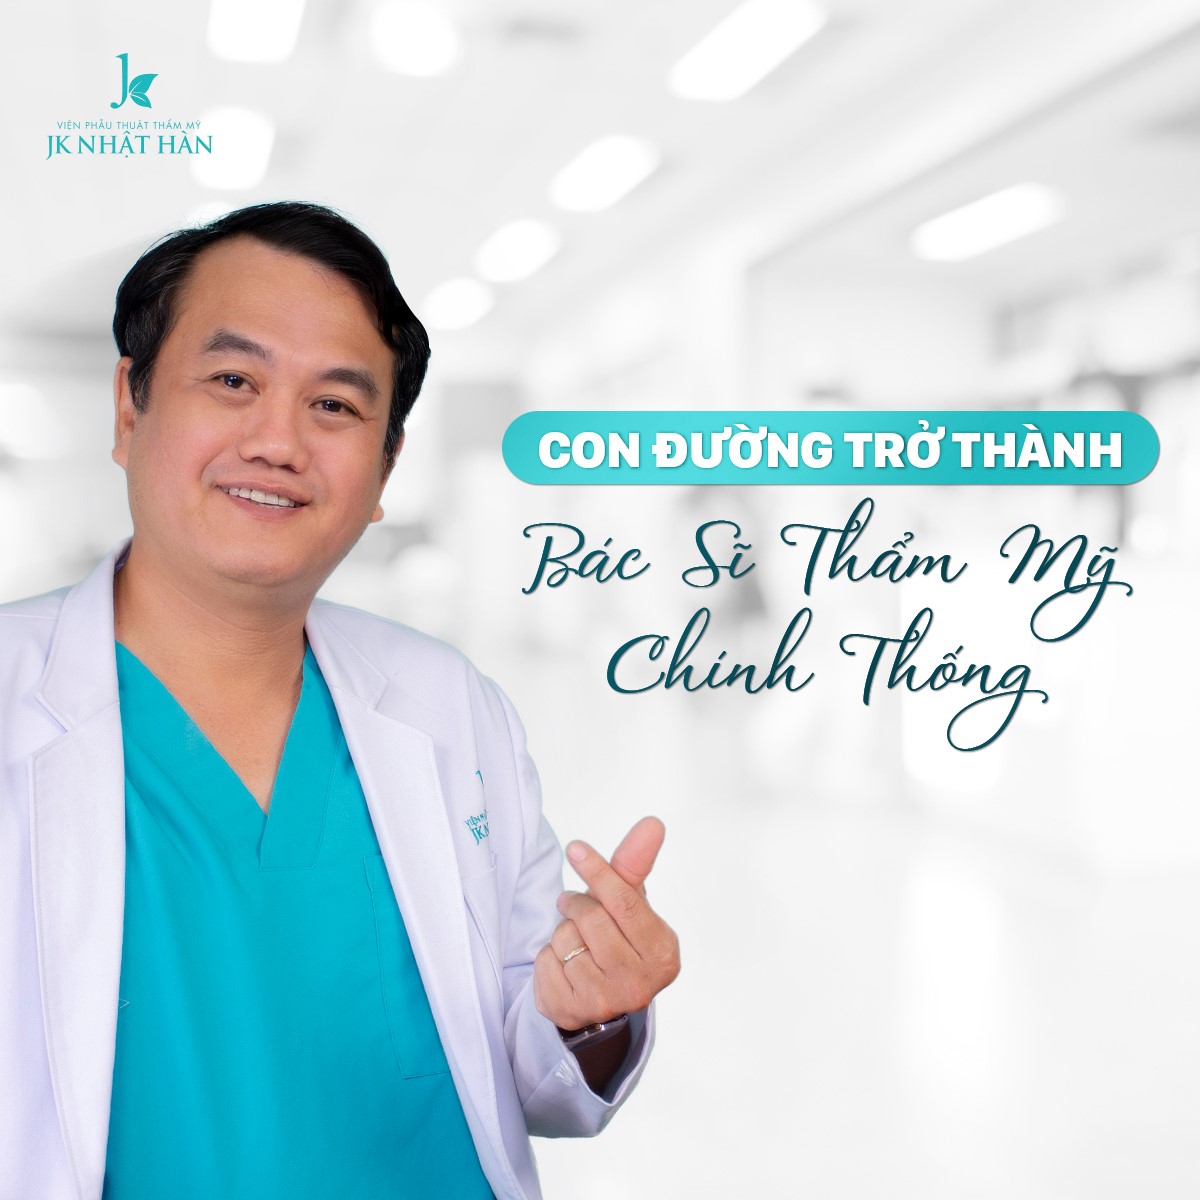 Bác sĩ Lê Viết trí là bác sĩ nâng mũi nổi tiếng tại Tp Hồ Chí Minh